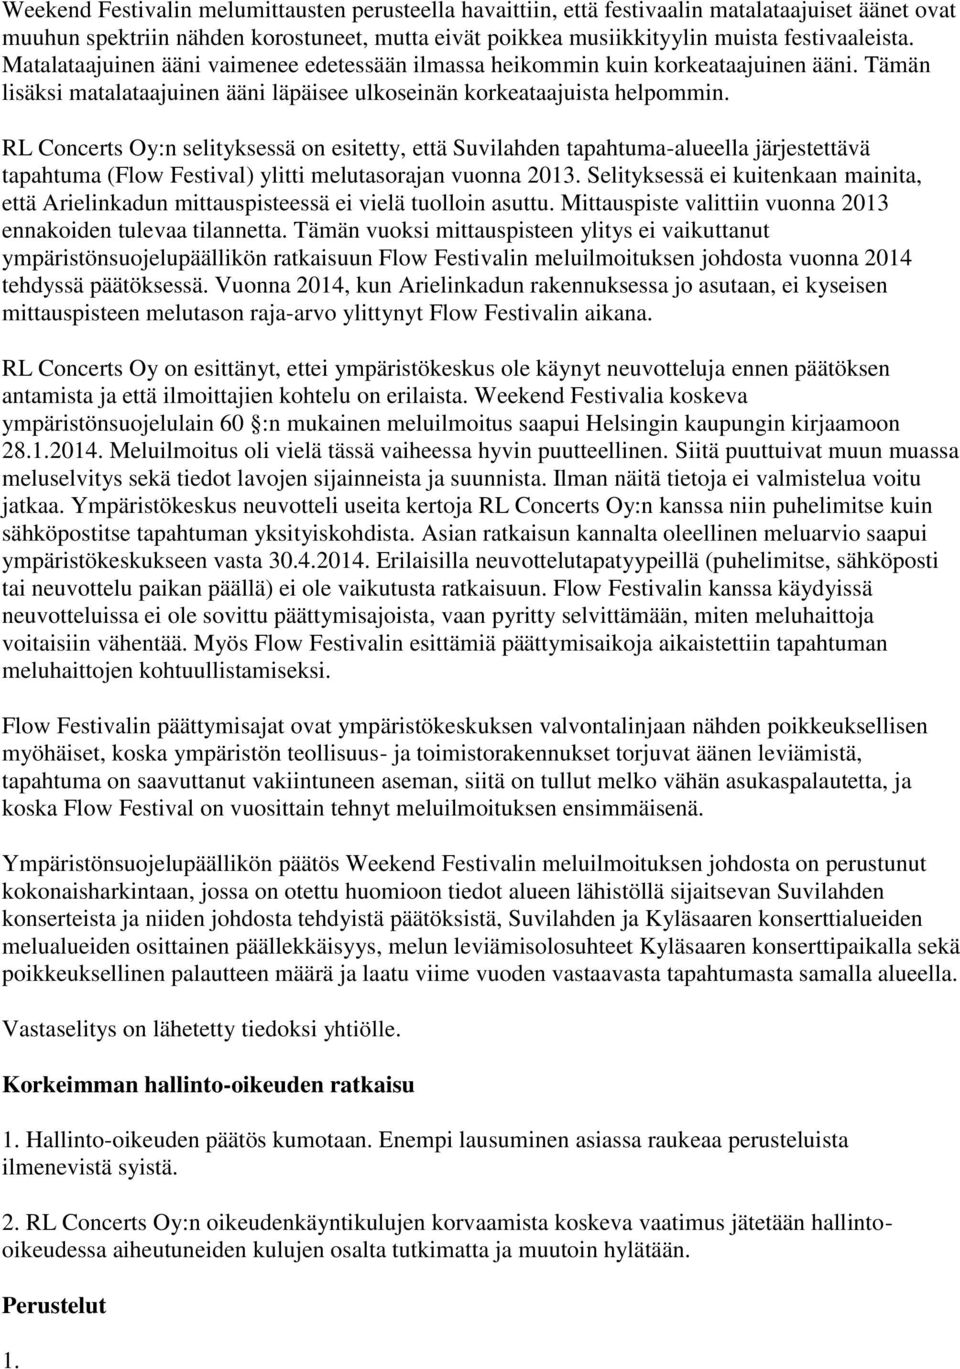 RL Concerts Oy:n selityksessä on esitetty, että Suvilahden tapahtuma-alueella järjestettävä tapahtuma (Flow Festival) ylitti melutasorajan vuonna 2013.